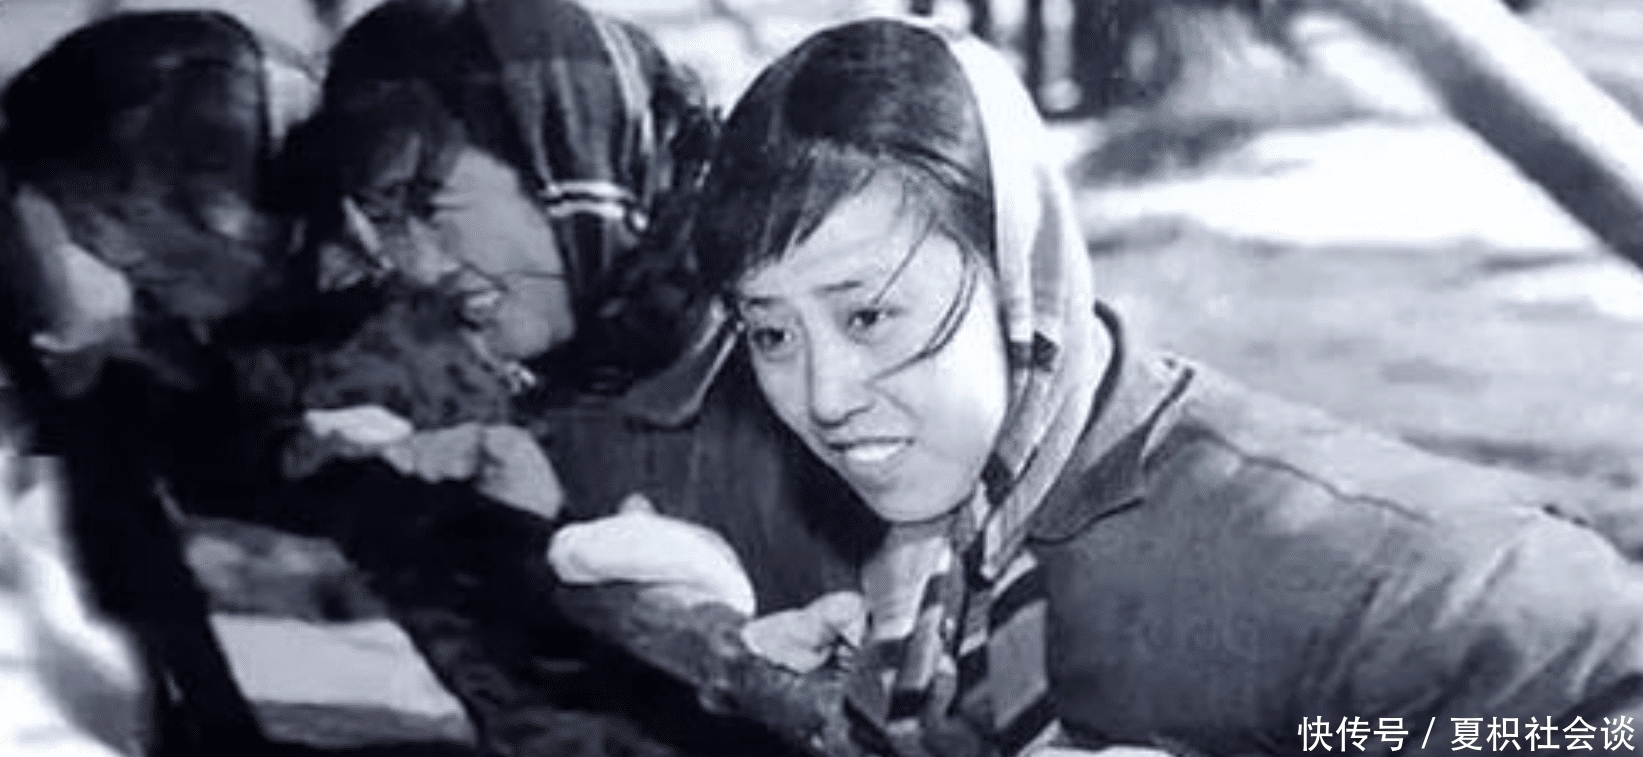 50年前, 那位拒上清华北大、立誓扎根乡村的女知青, 如今近况如何